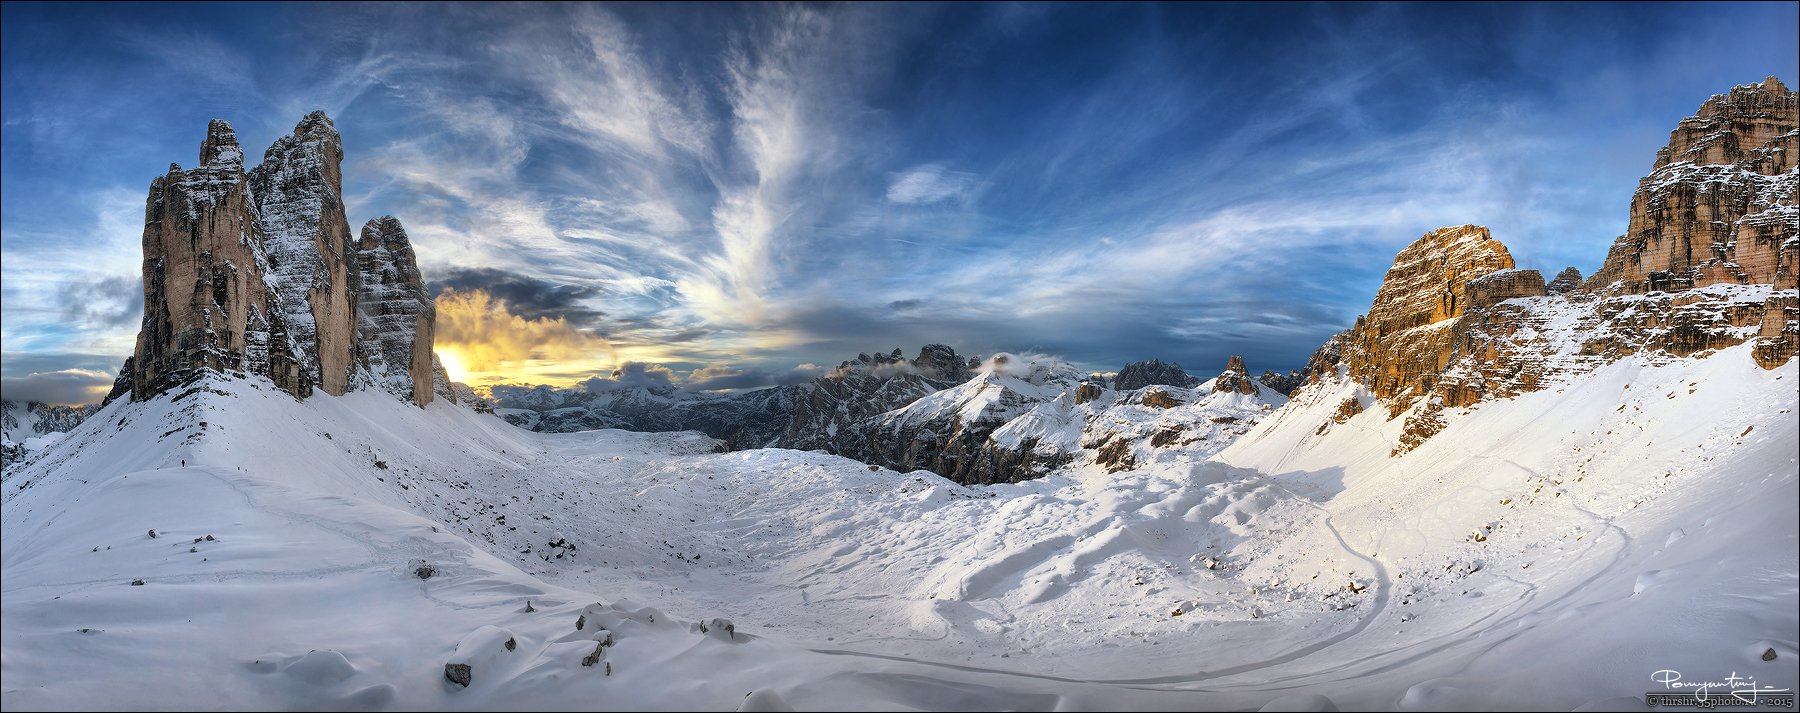 Alps, Bolzano, Di lavaredo, Dolomites, Drei zinnen, Italy, Panorama, South tyrol, Three peaks, Tre cime, Andrew Thrasher